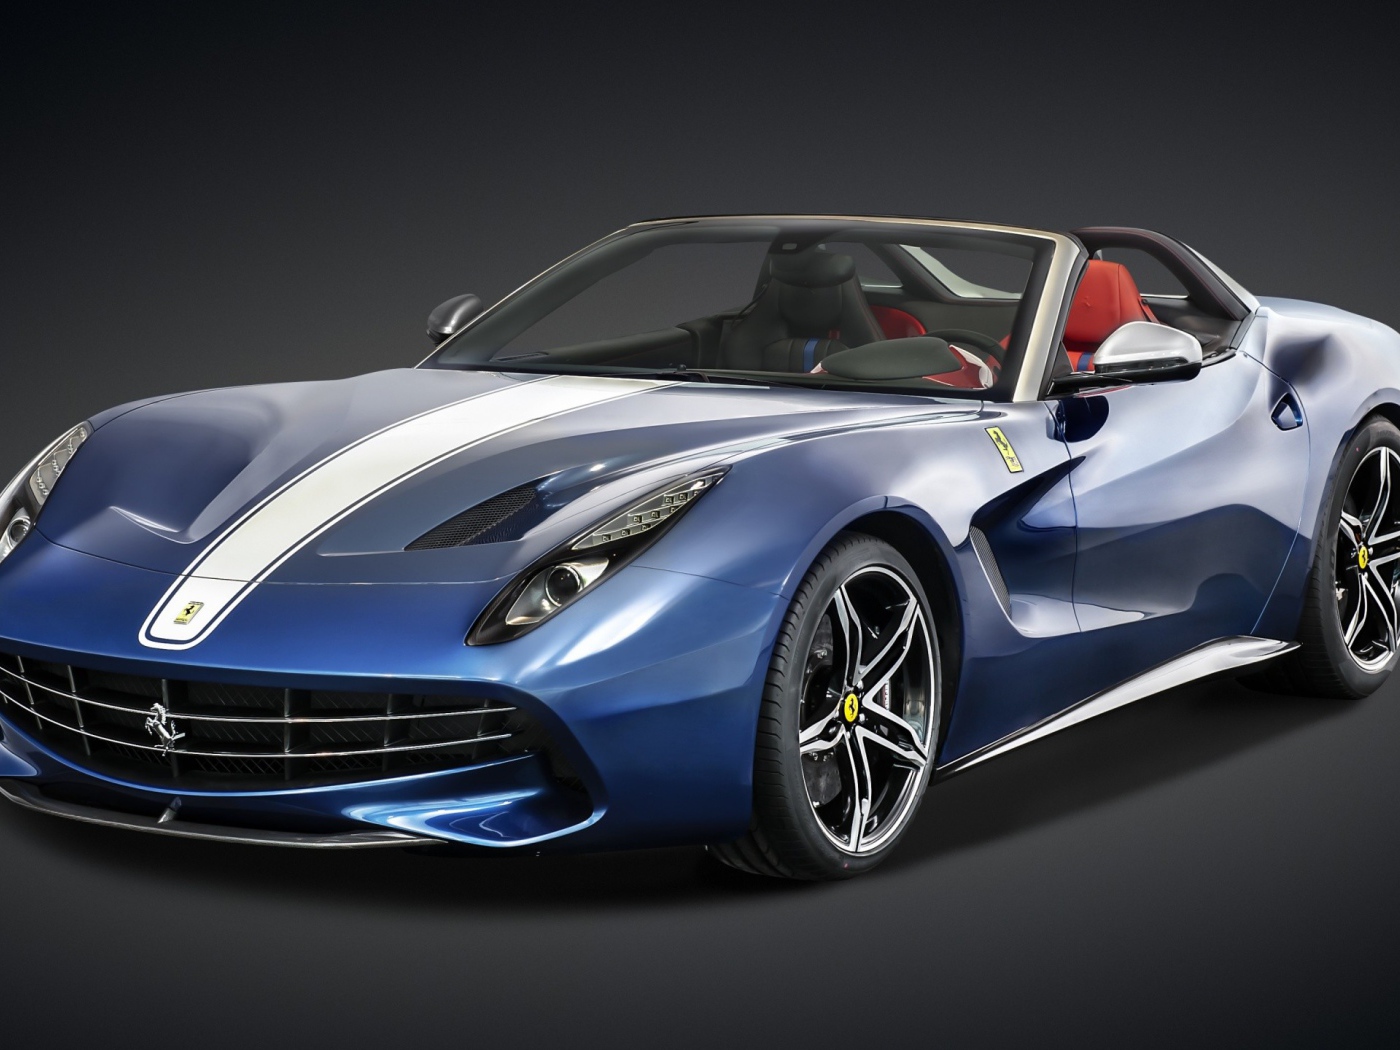 Стильный синий спортивный автомобиль Ferrari F60 America